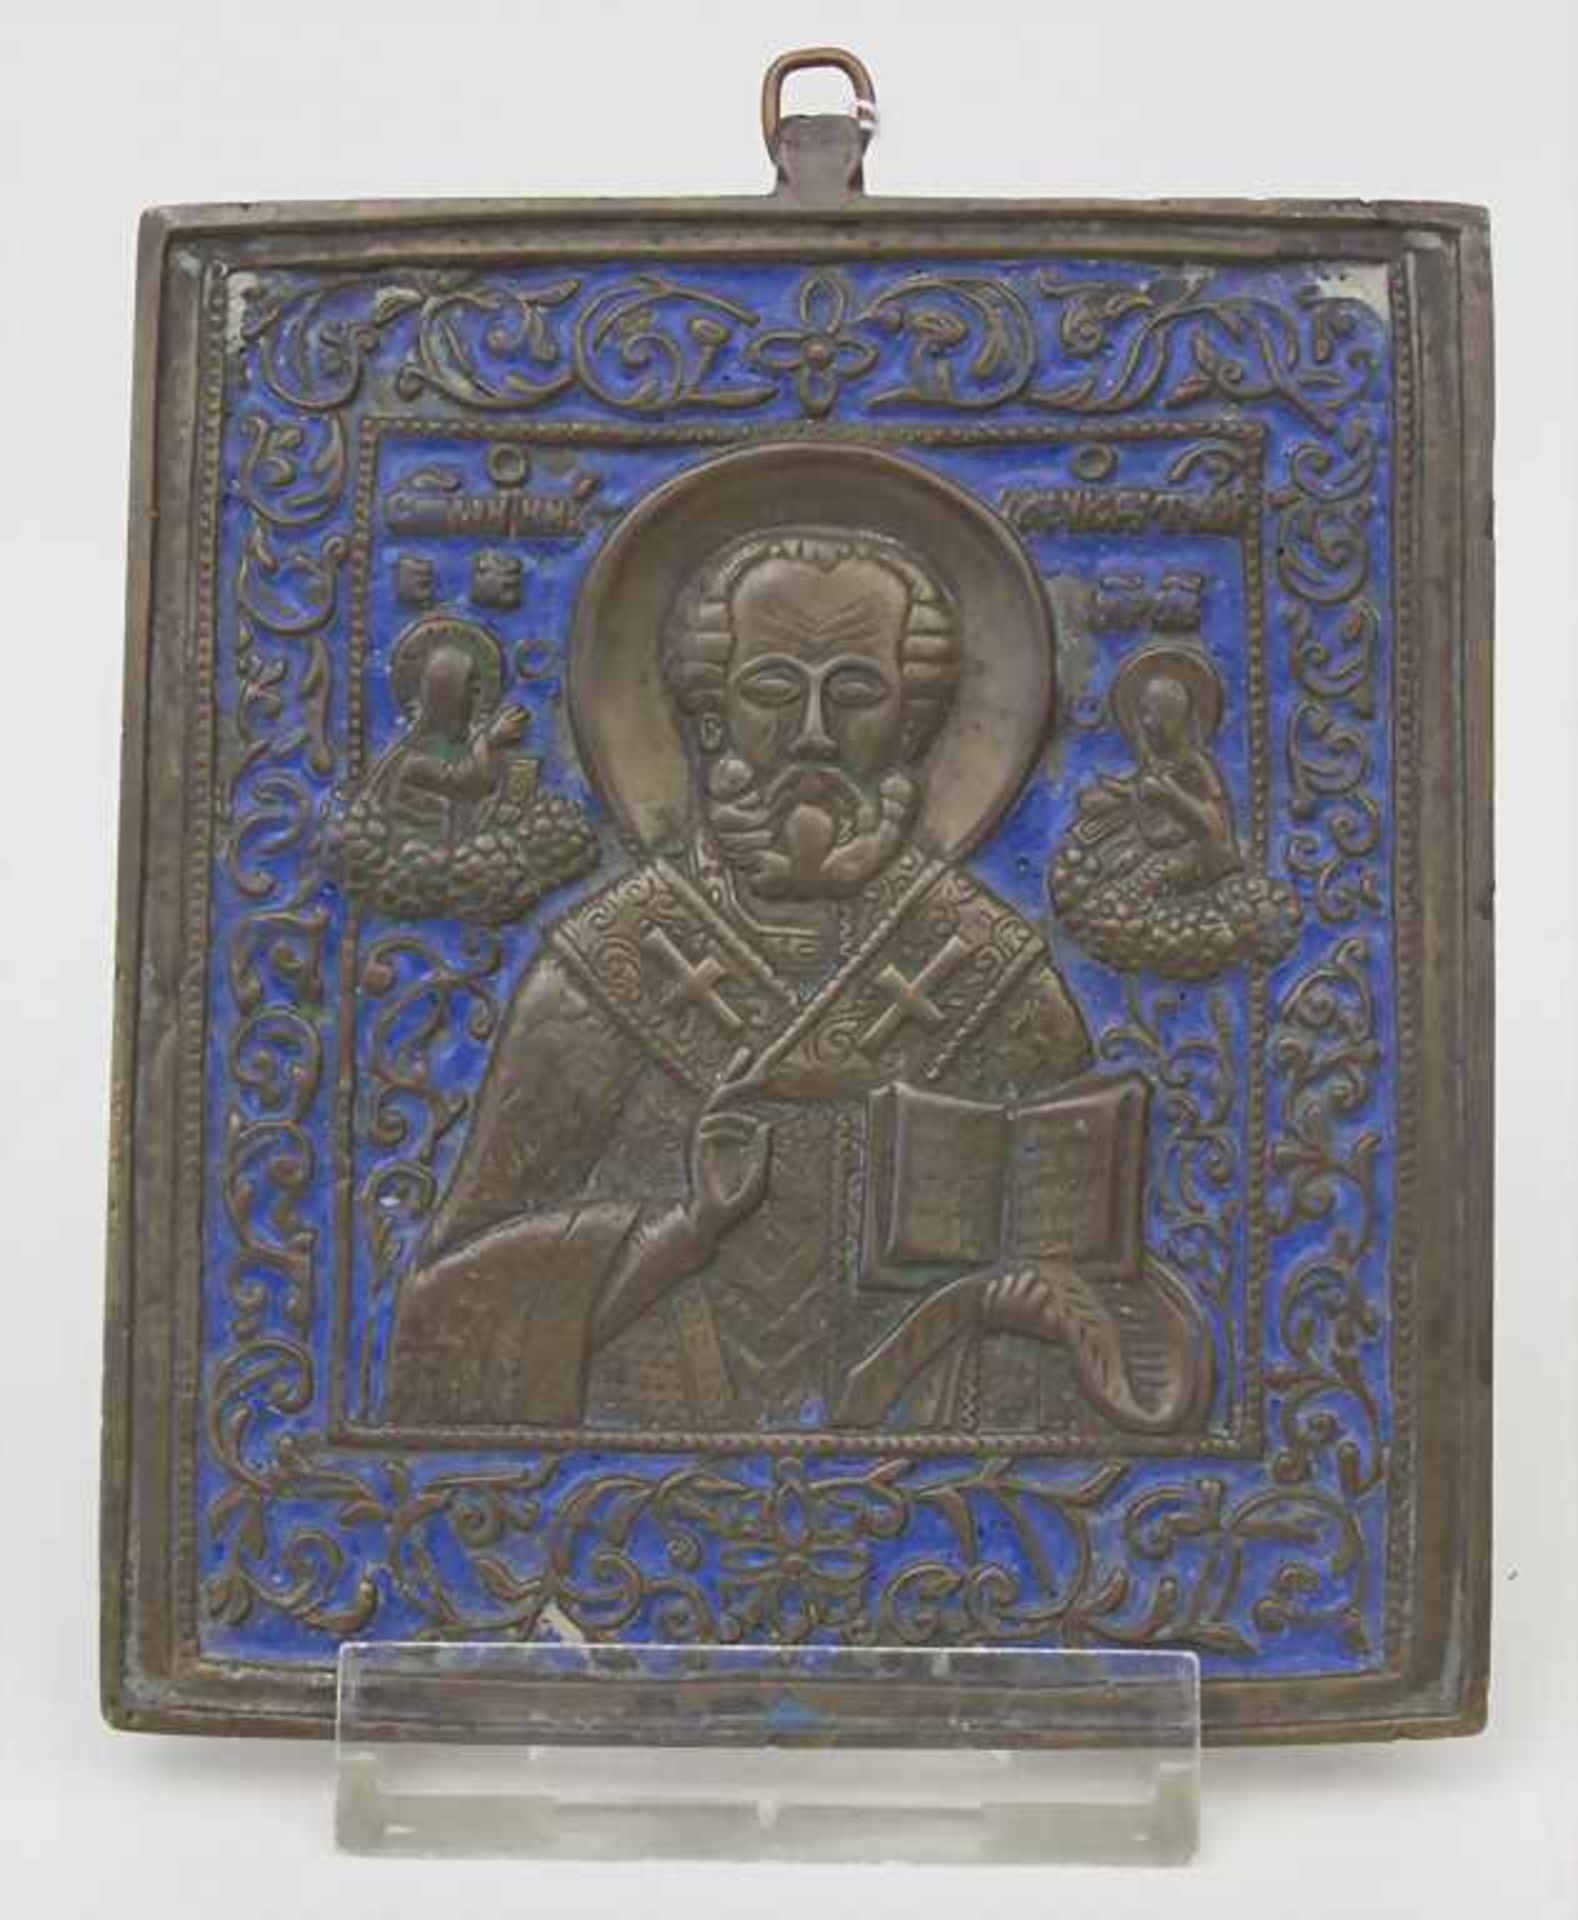 Reiseikone, Hl. Nikolaus / A travel icon, Russland, 18./19. Jh.Material: Bronze mit reichem